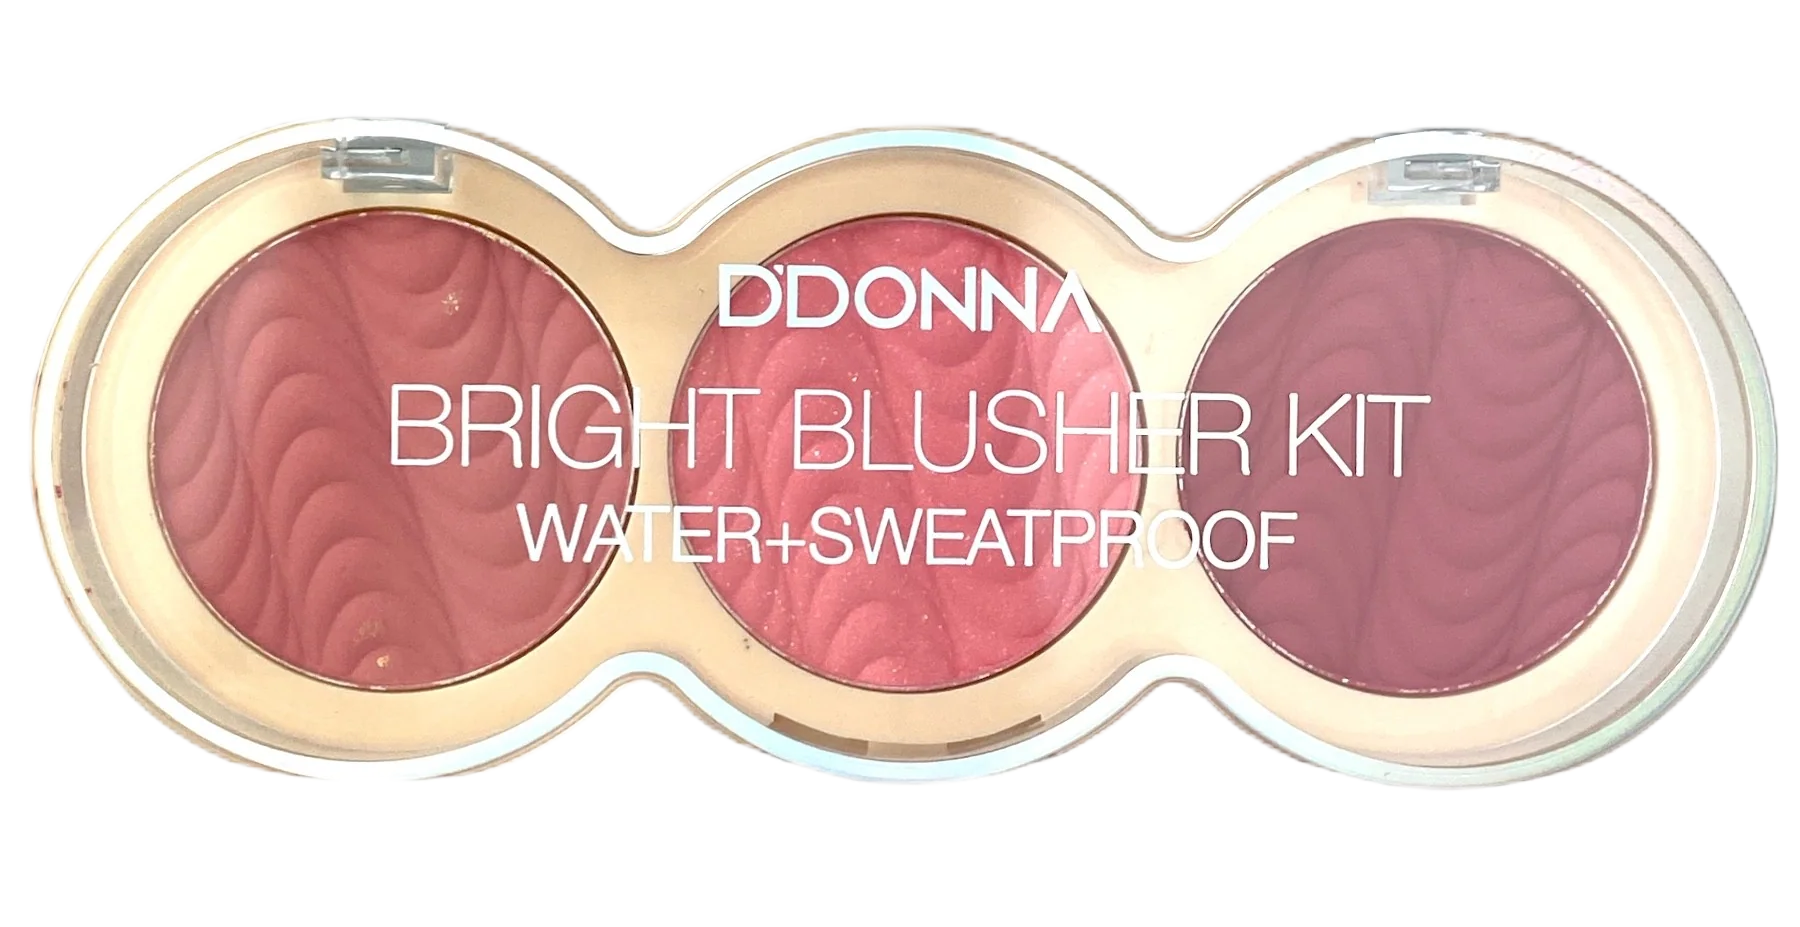 Bright Blusher Kit Water Sweatproof 7,5gr no 01 DDONNA Cosmetics 13319A-1 – DDONNA Cosmetics – nj_13319A-1